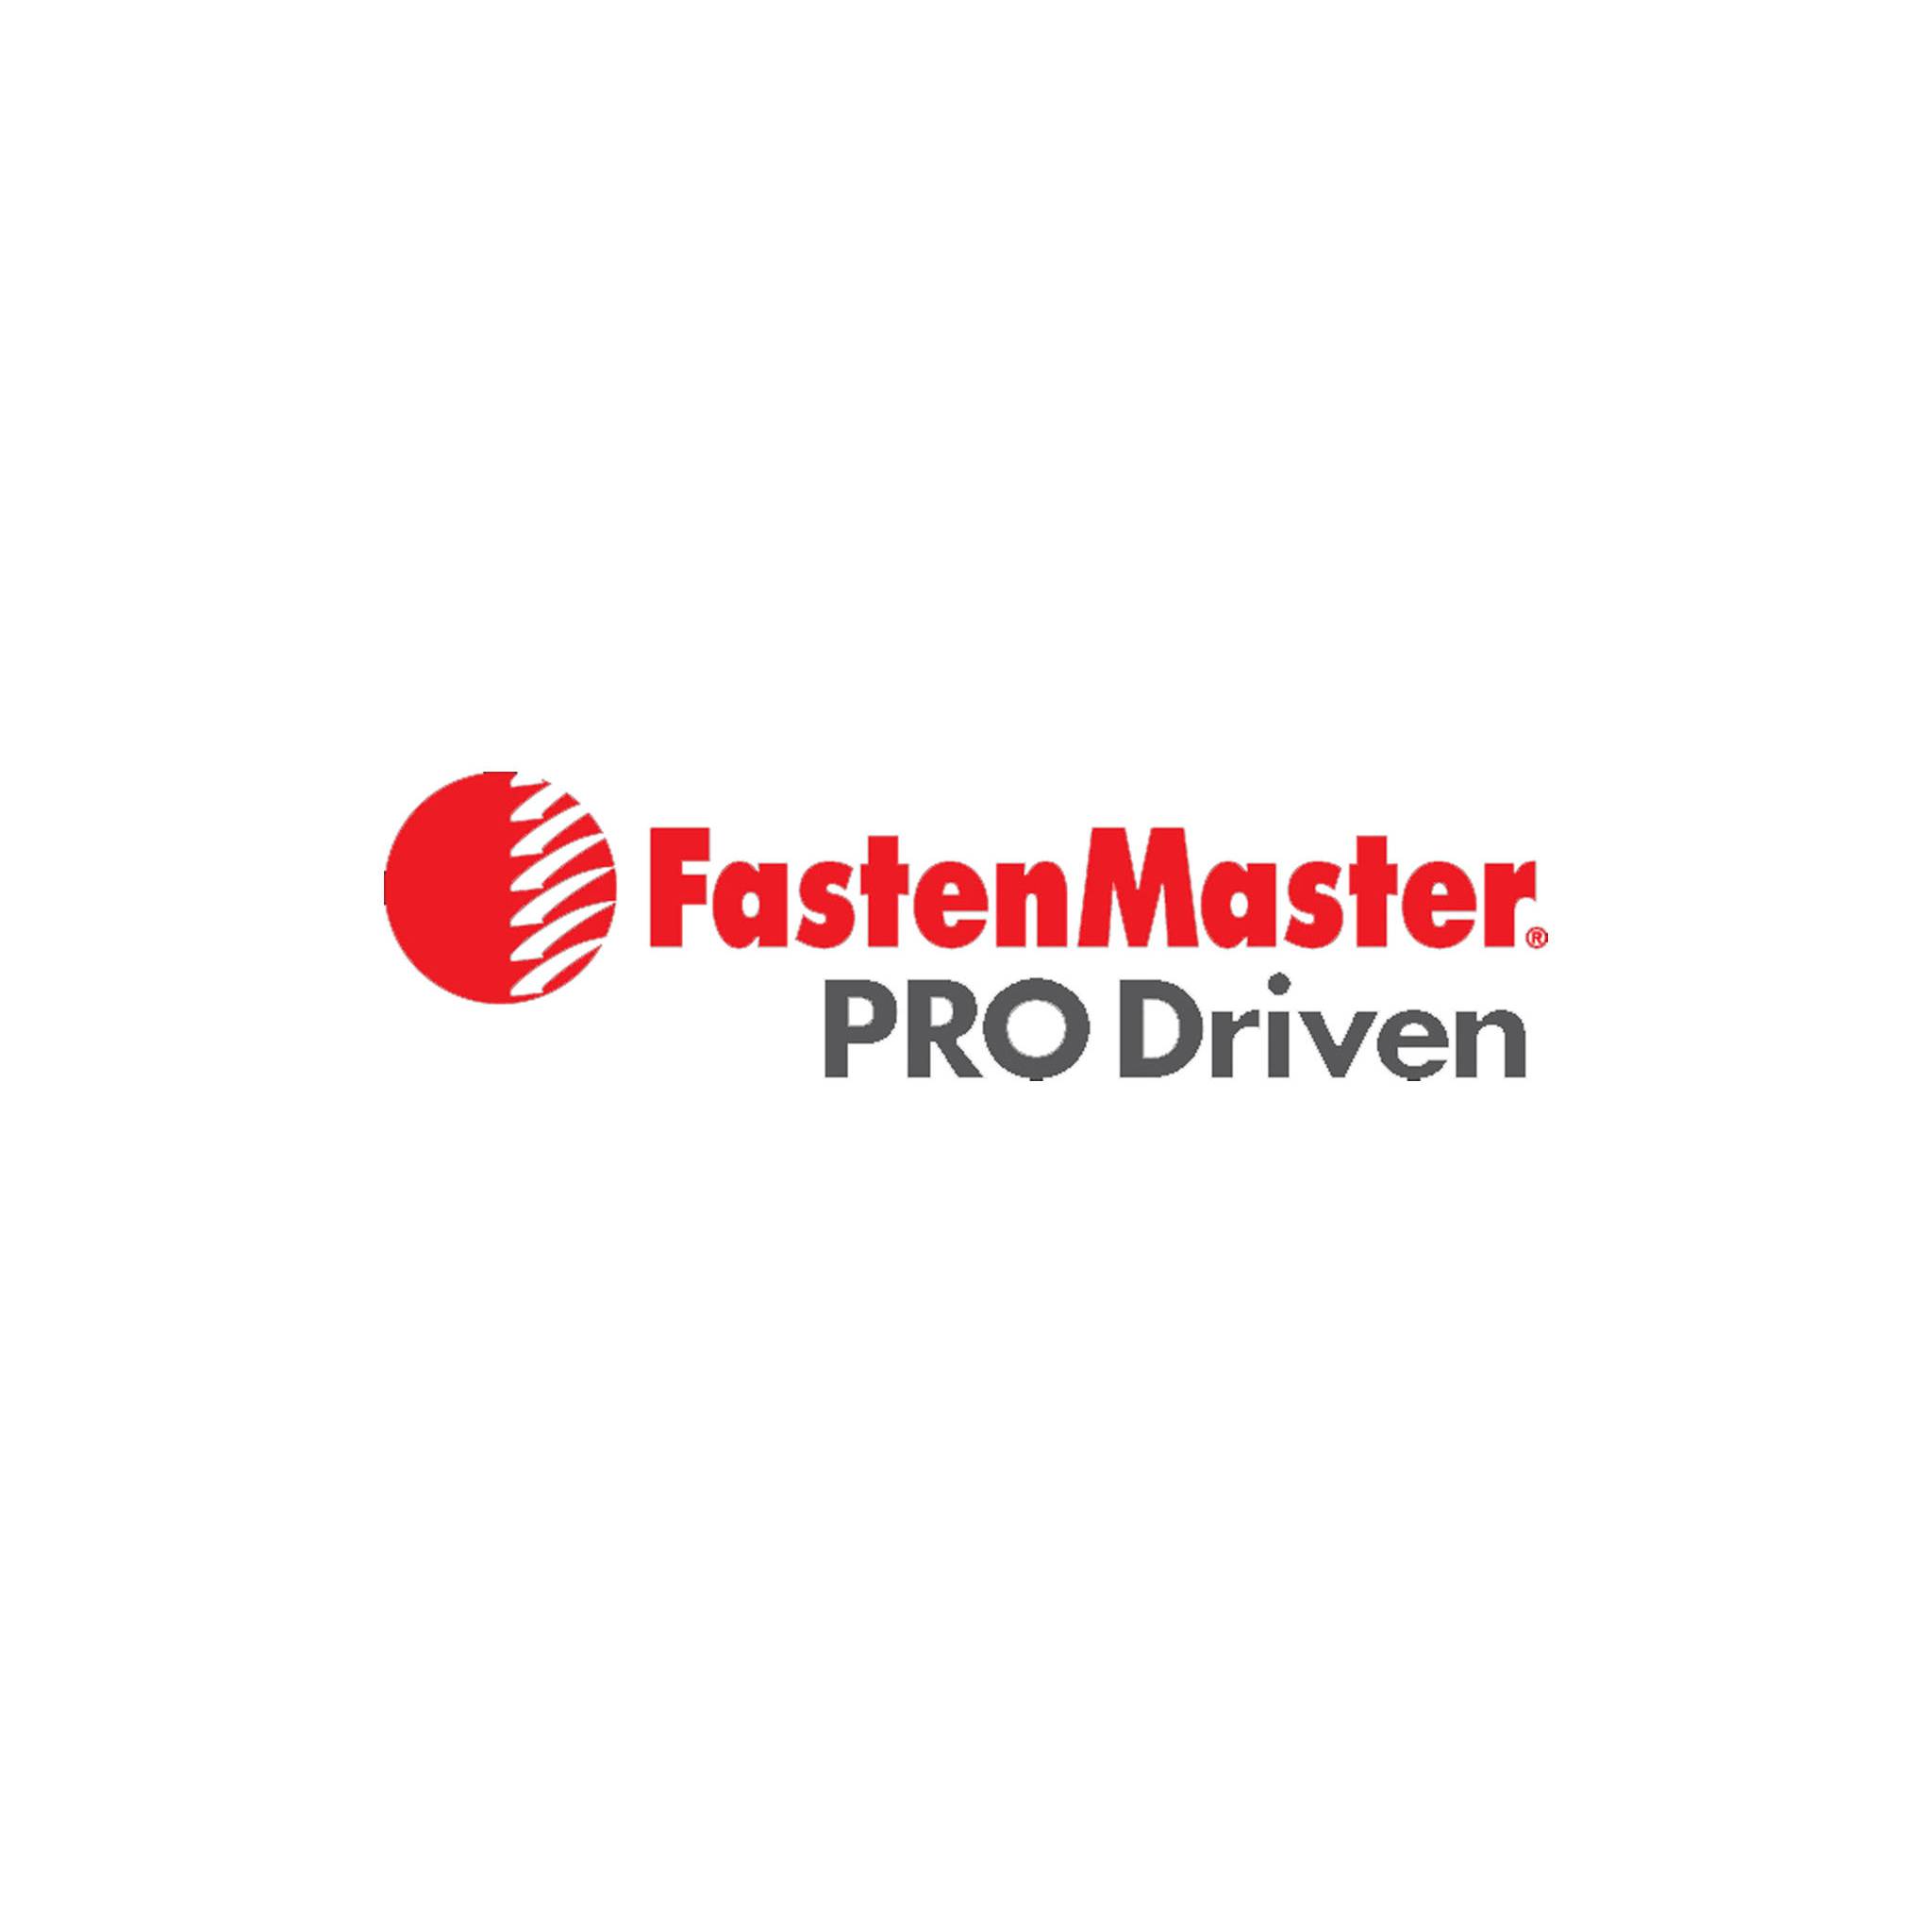 Fastenmaster logo